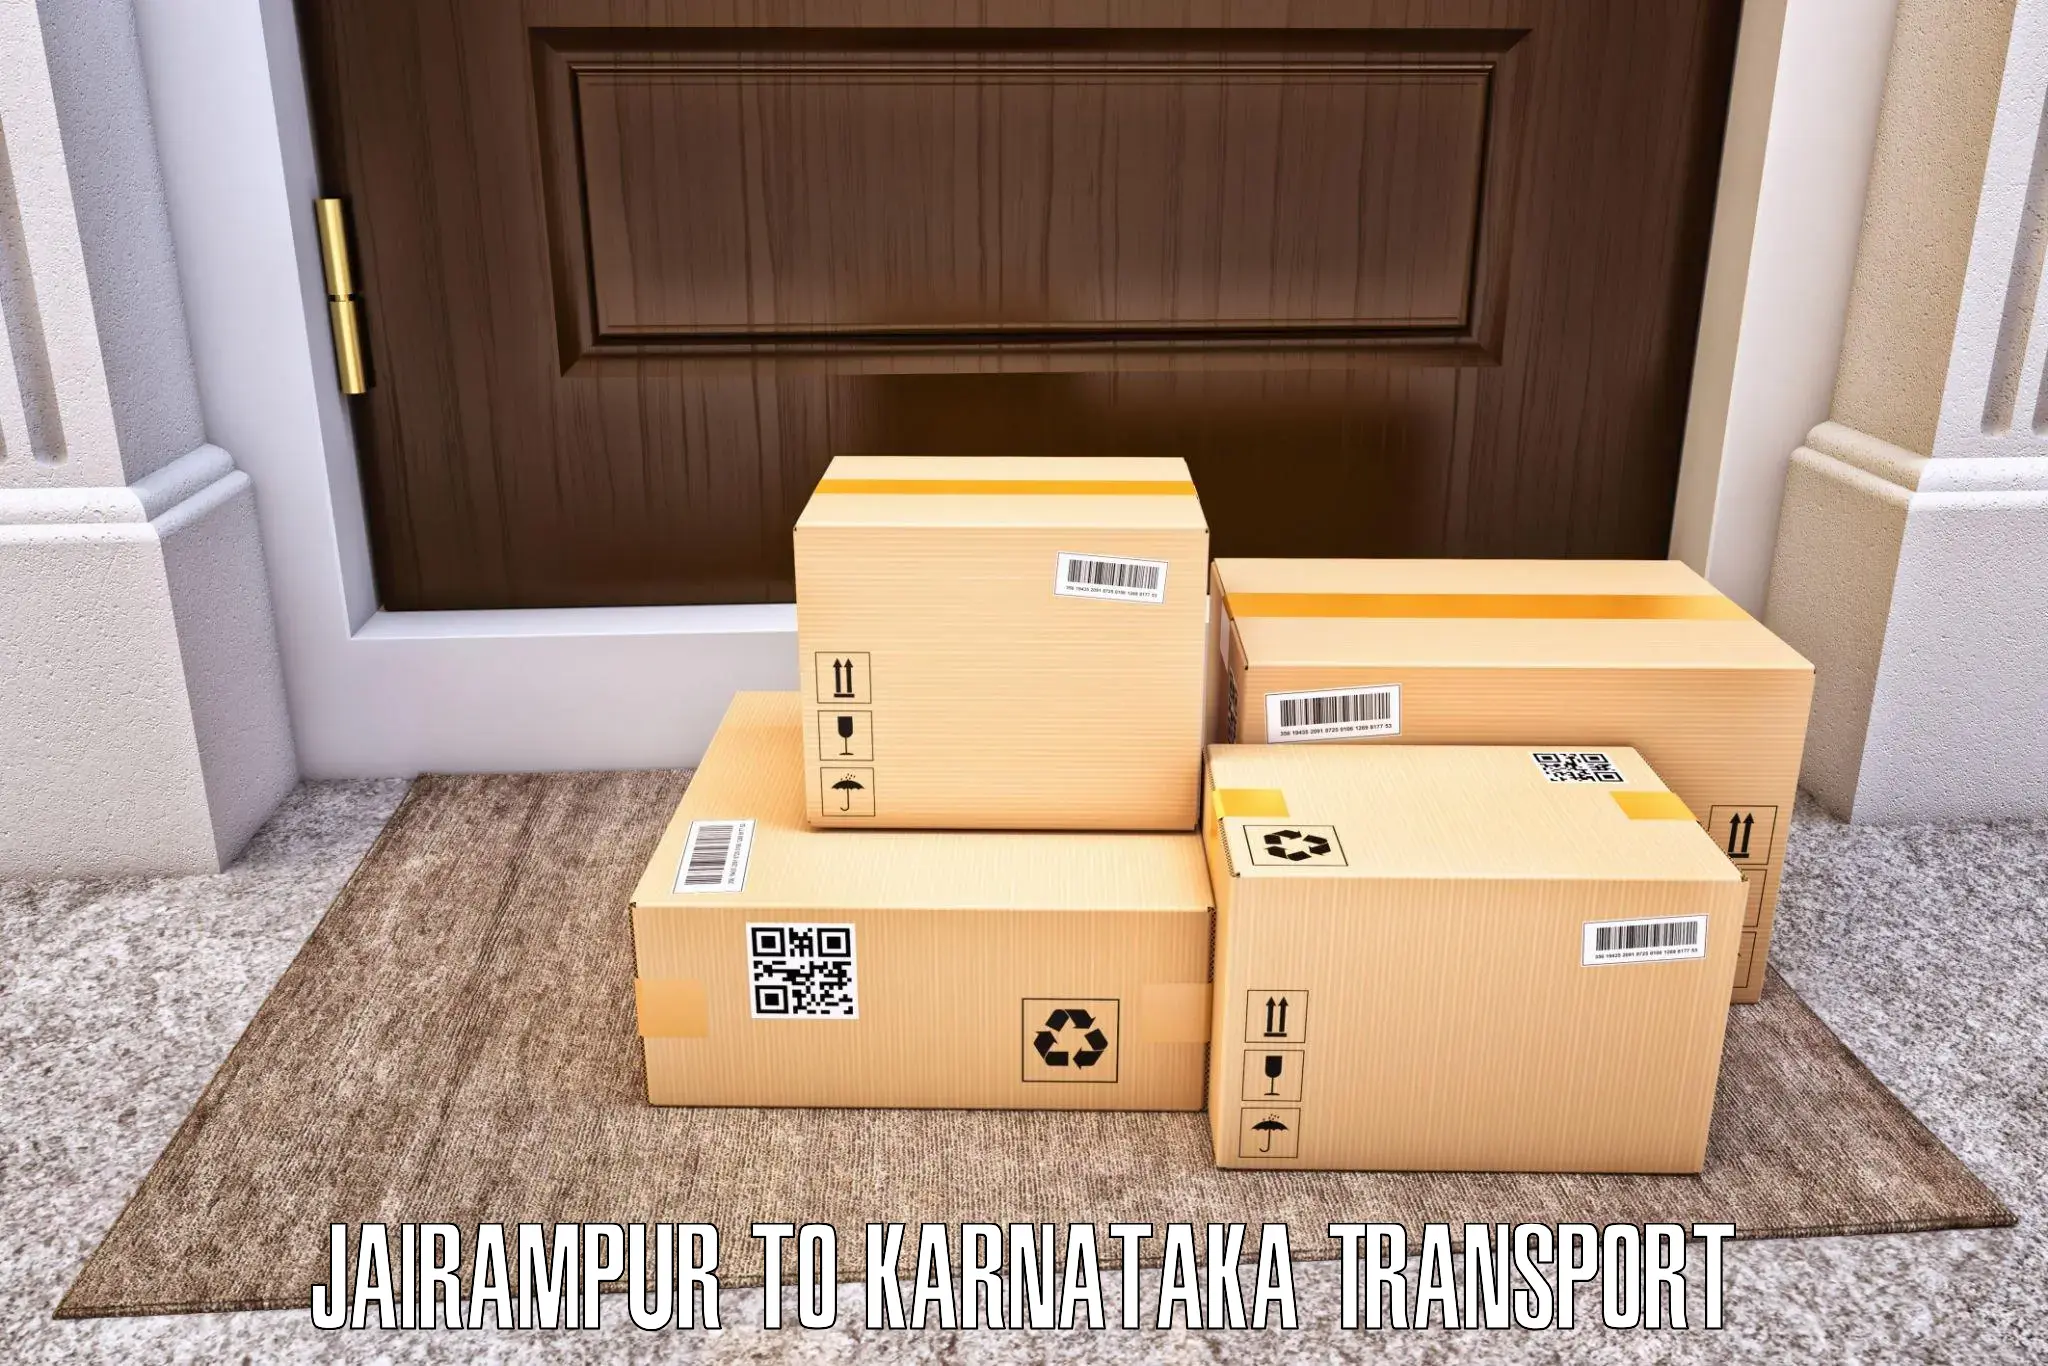 Vehicle transport services Jairampur to Bangarapet